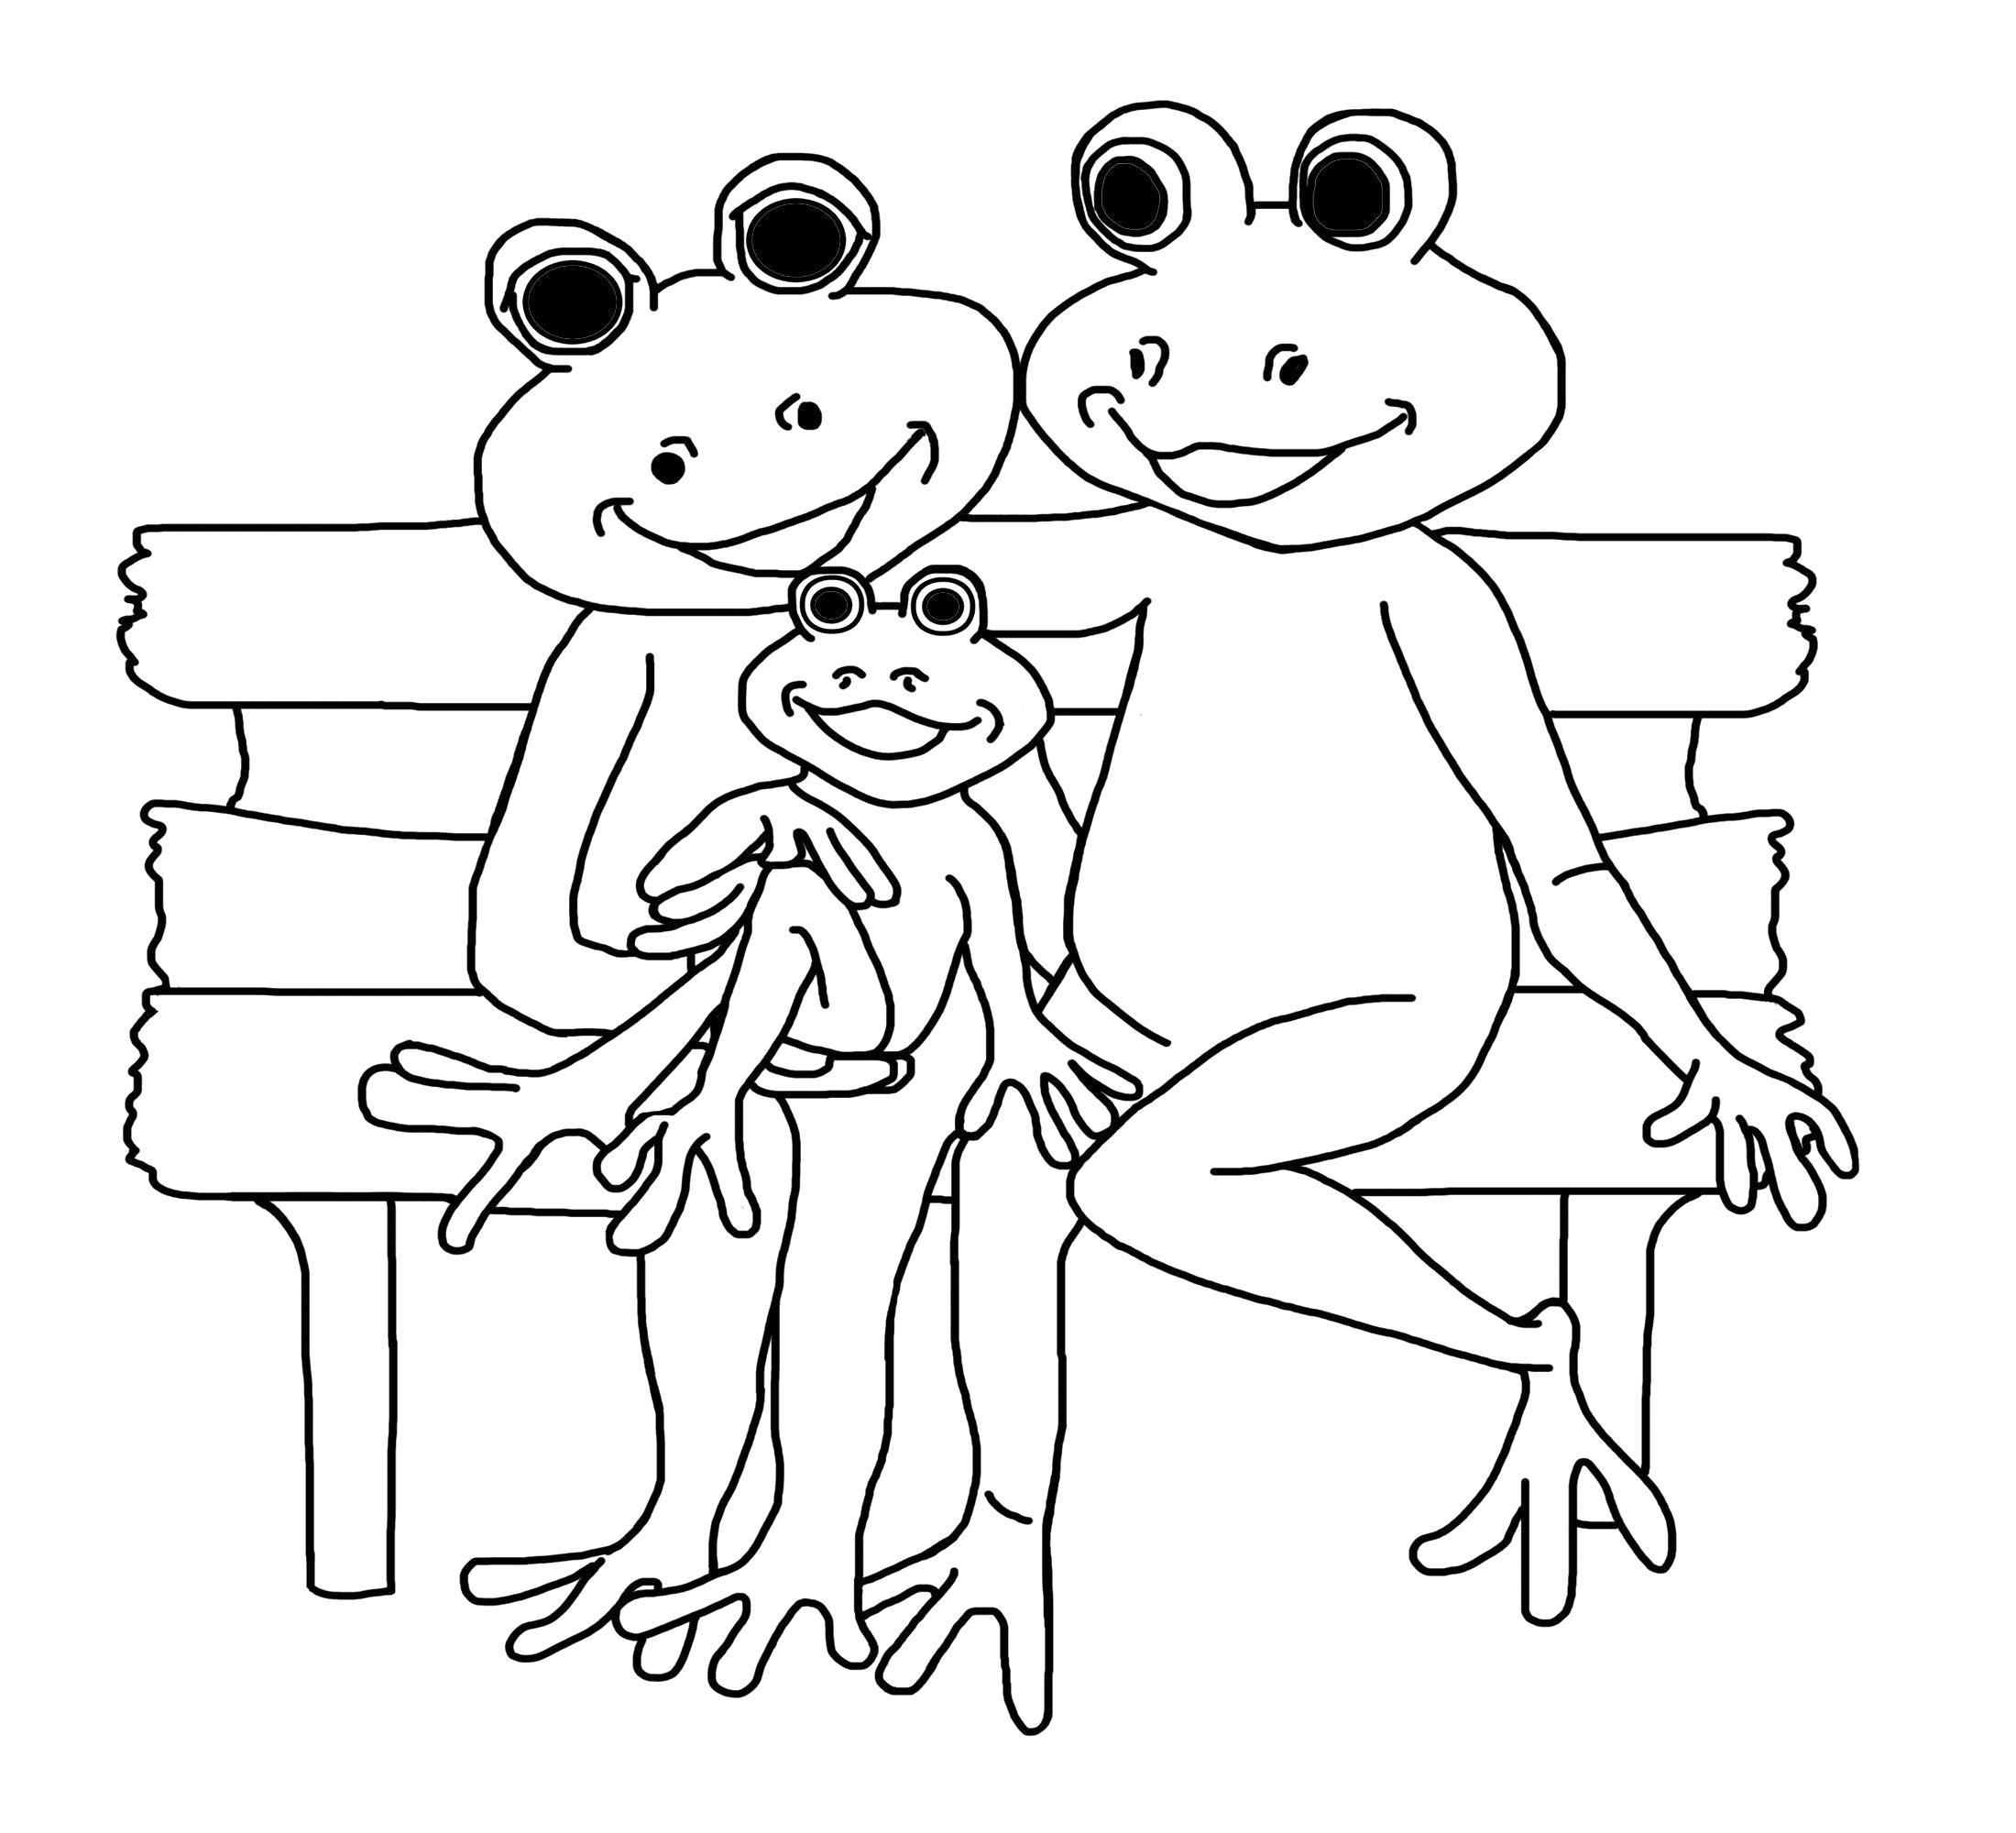 Раскраска картинка лягушка  для детей. Скачать лягушка.  Распечатать лягушка